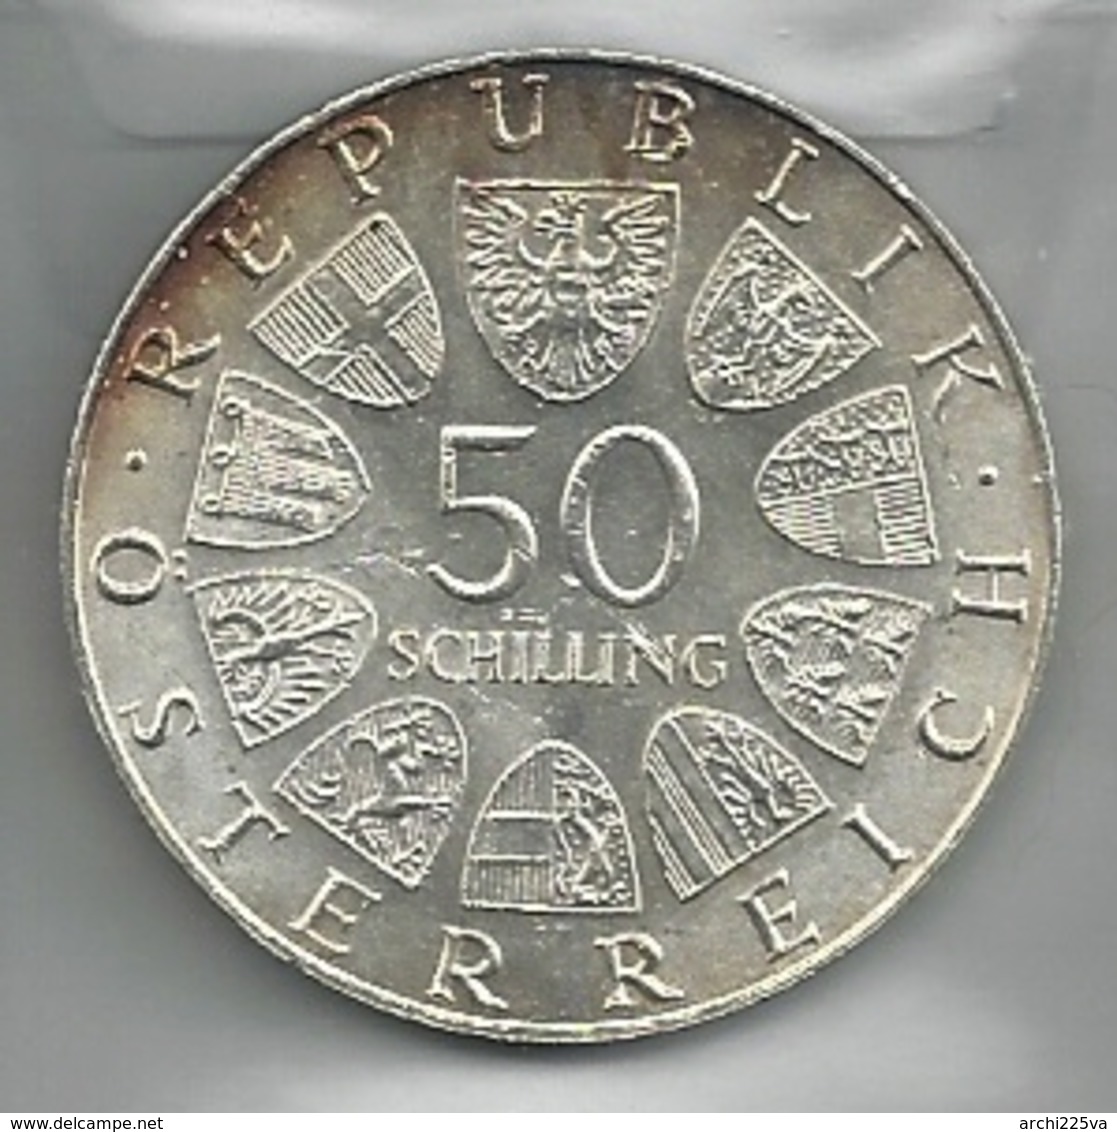 AUSTRIA 1972 - SALIZBURG - 50 Schilling SPL / FDC - Argento / Argent / Silver - Confezione In Bustina - Austria